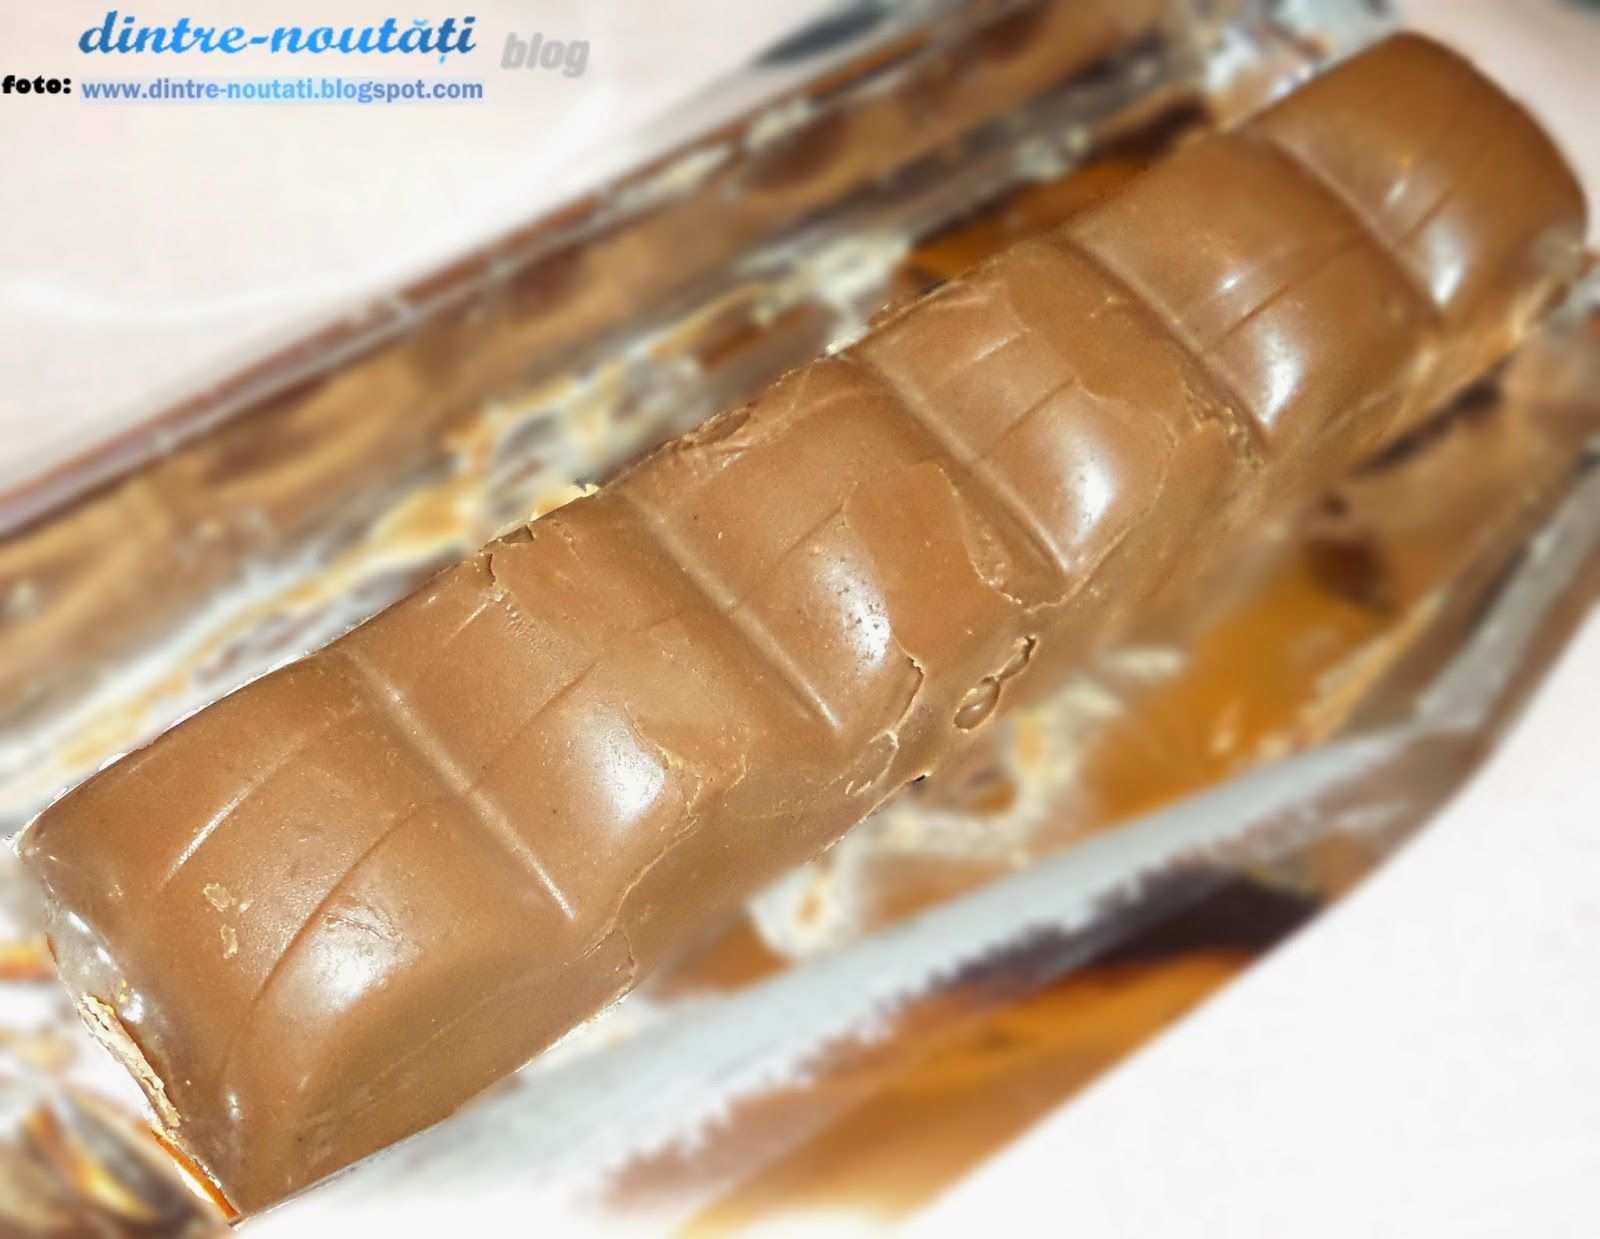 Baton de ciocolata, cu prajit de arahide, caramel si nuga, glazurat cu ciocolata cu lapte, Snickers Super (RU)